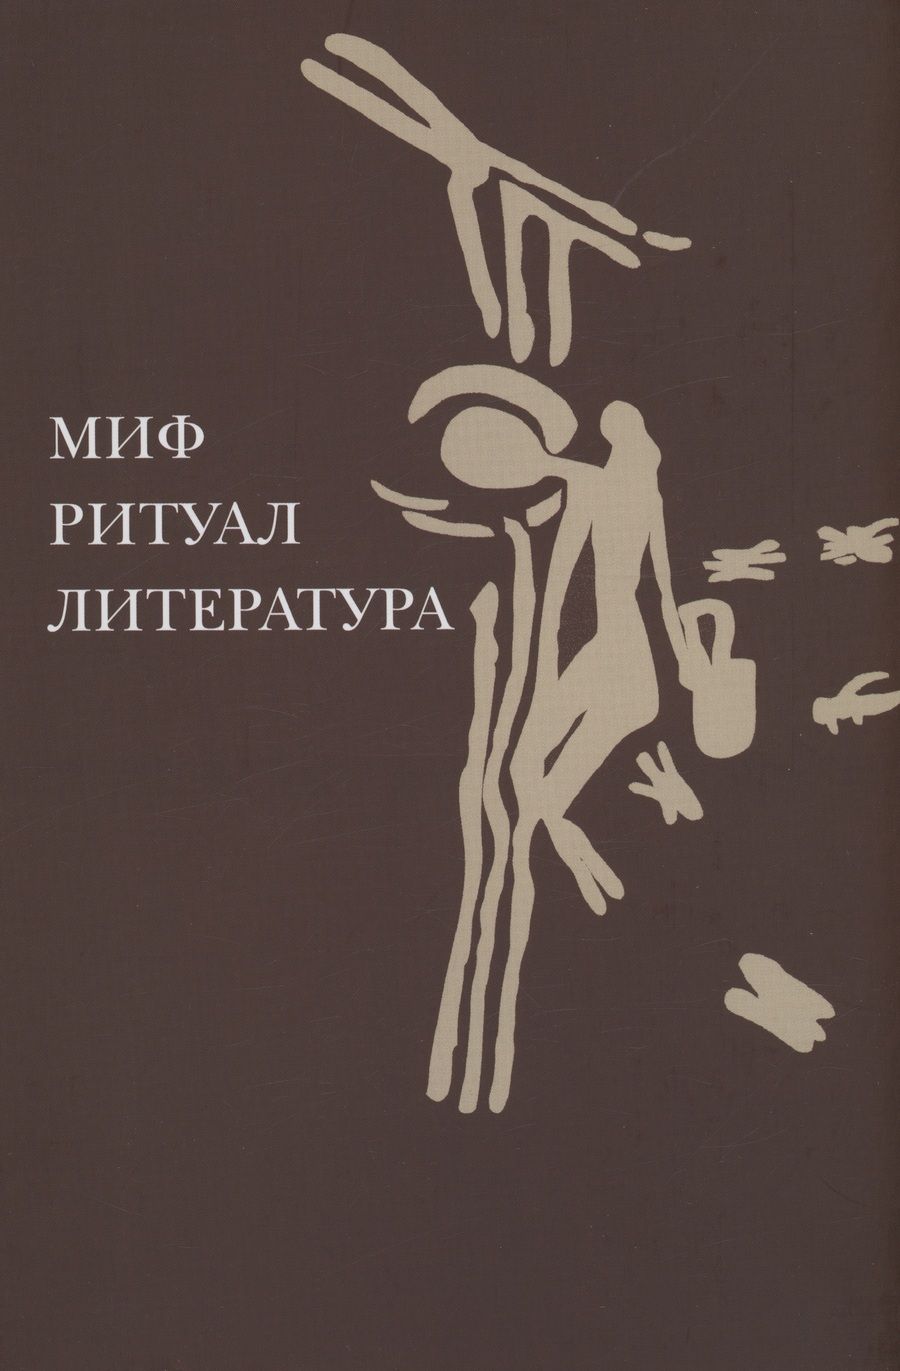 Обложка книги "Миф, ритуал, литература"